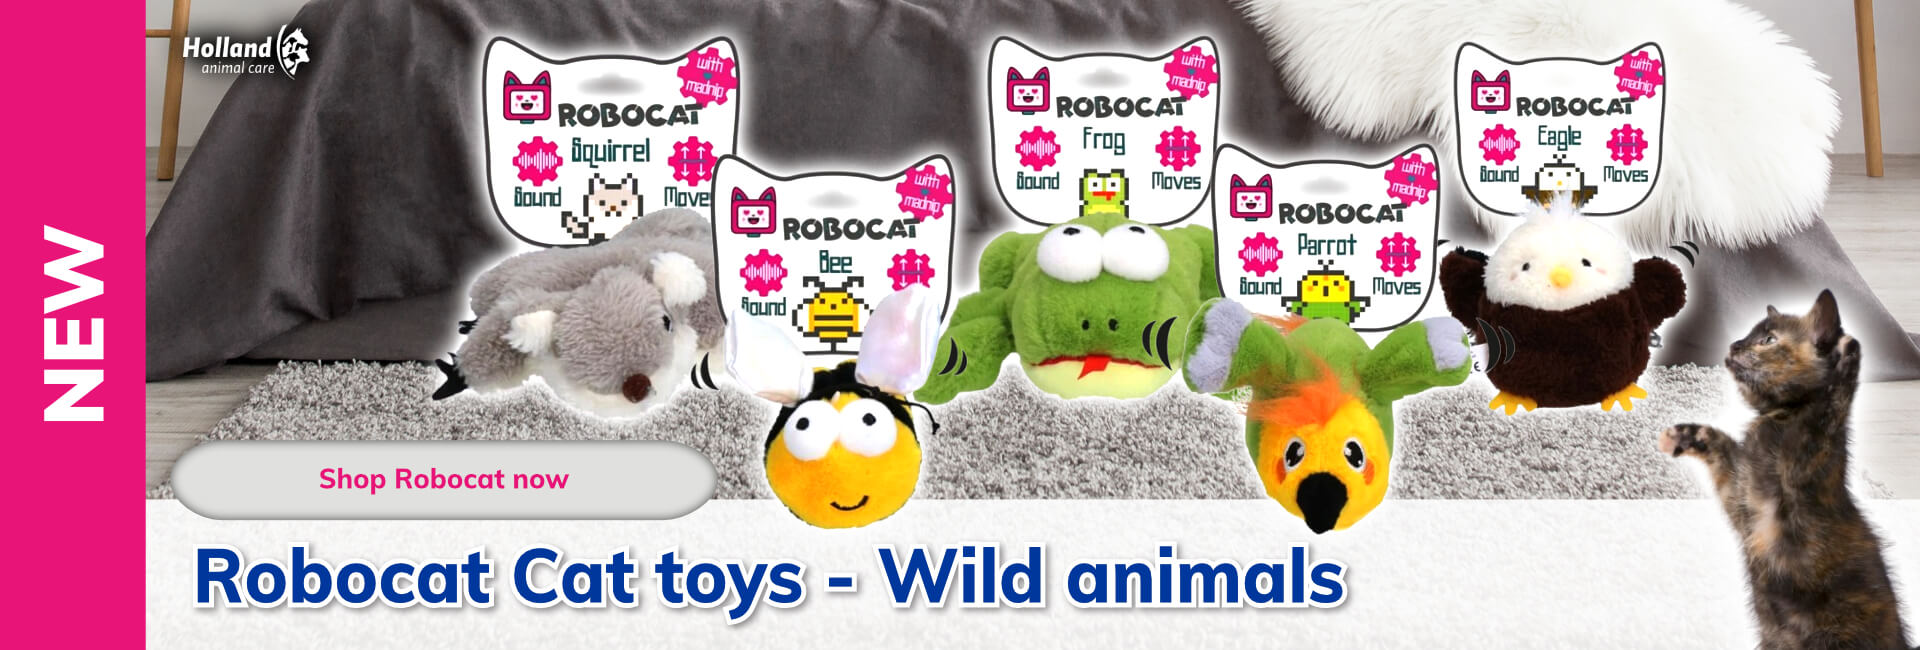 Robocat Cat toys - Wild animals